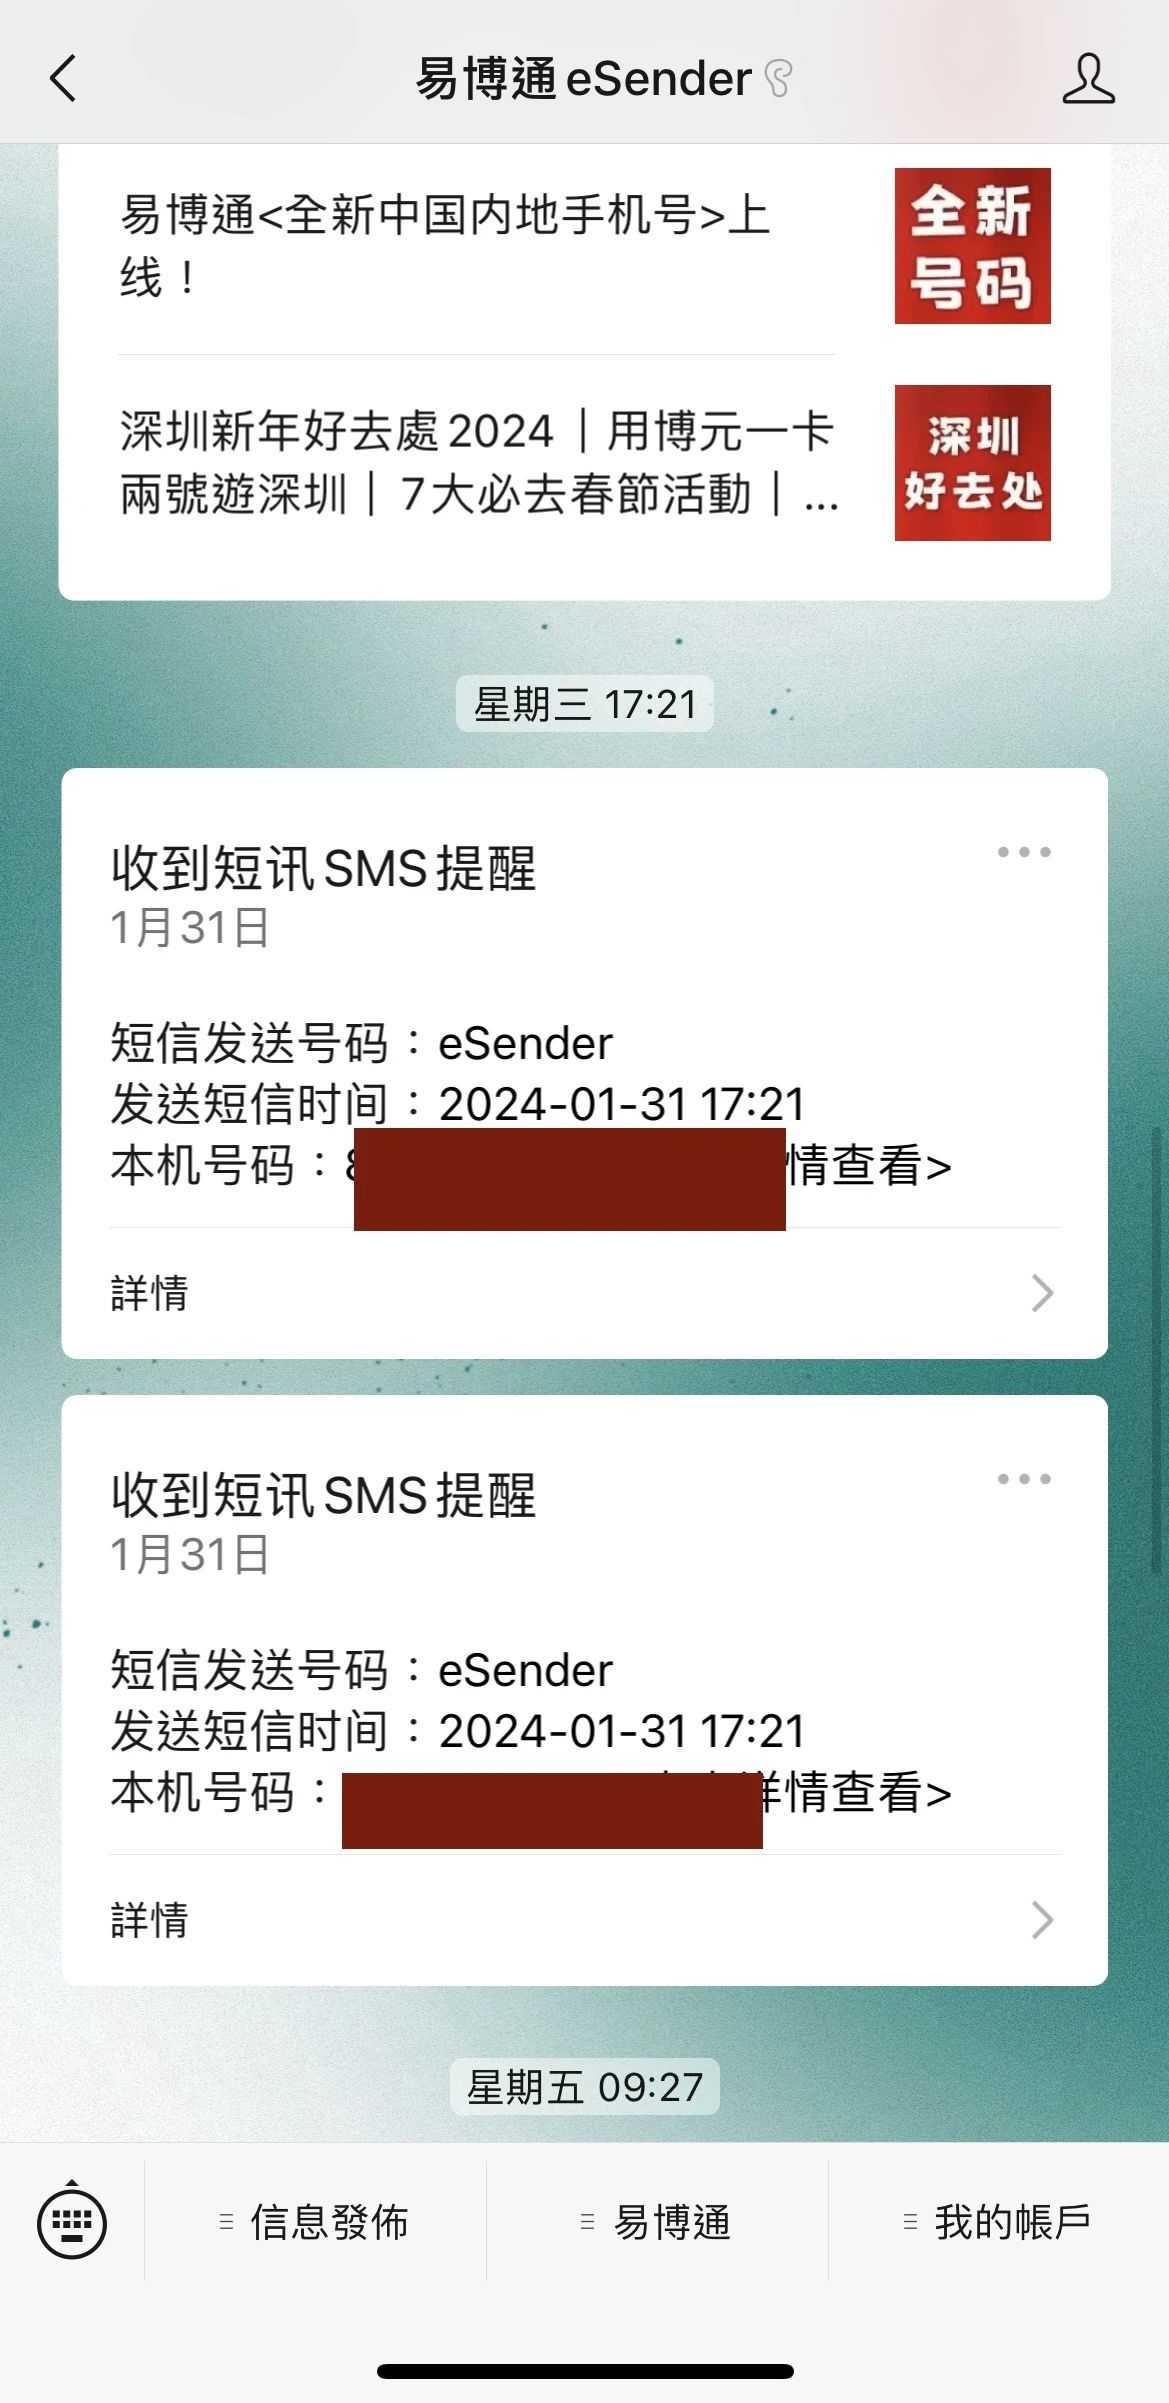 8단계: 결제를 완료하고 SMS를 받아 홍콩 휴대전화 번호가 성공적으로 주문되었음을 알립니다.